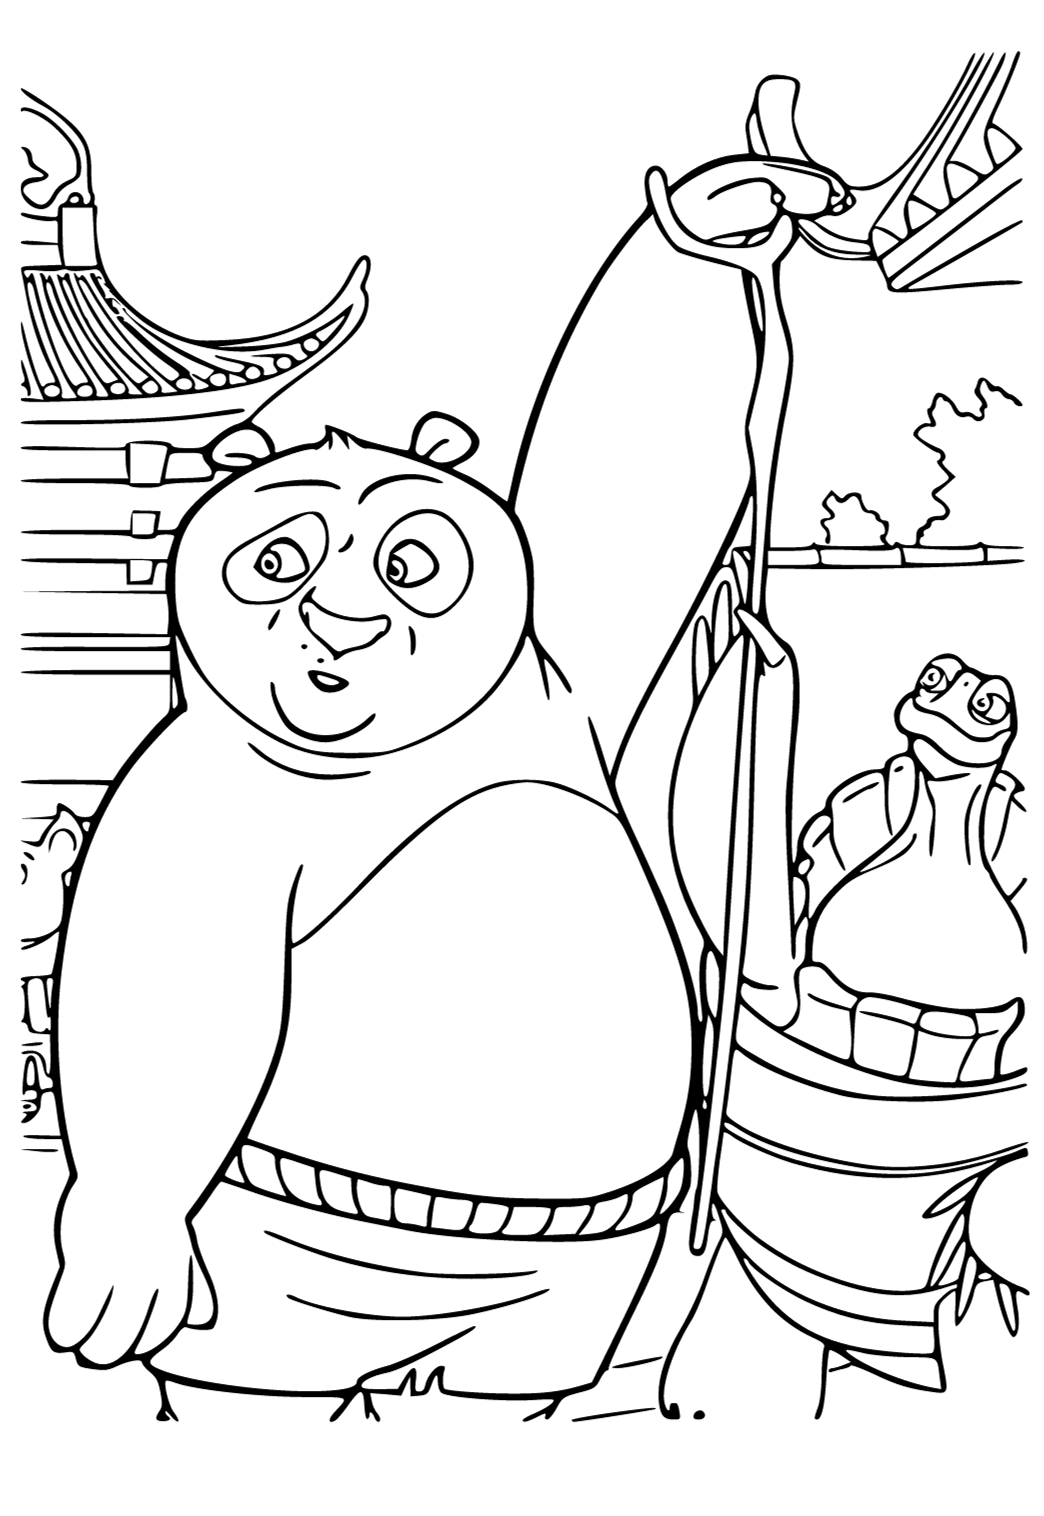 personagem de desenho animado de rosto de panda. livro de colorir